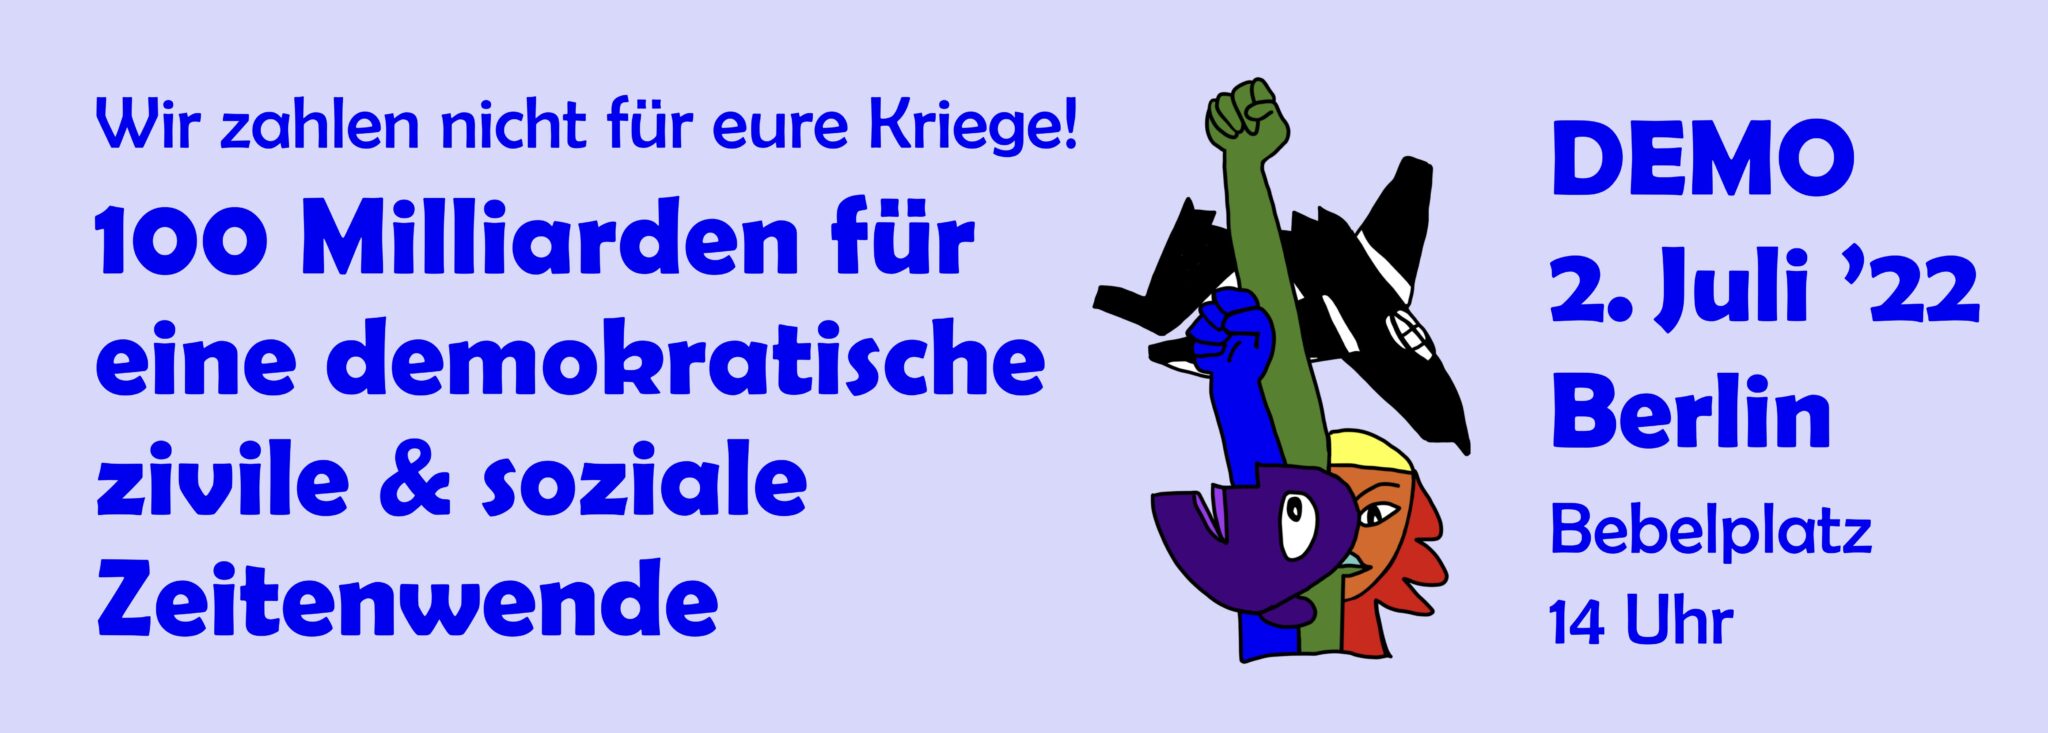 Logo mit Demo 2 2048x733 1 - Friedensdemo in Berlin - Berlin, Friedensdemonstration, Zivile Zeitenwende - Politik